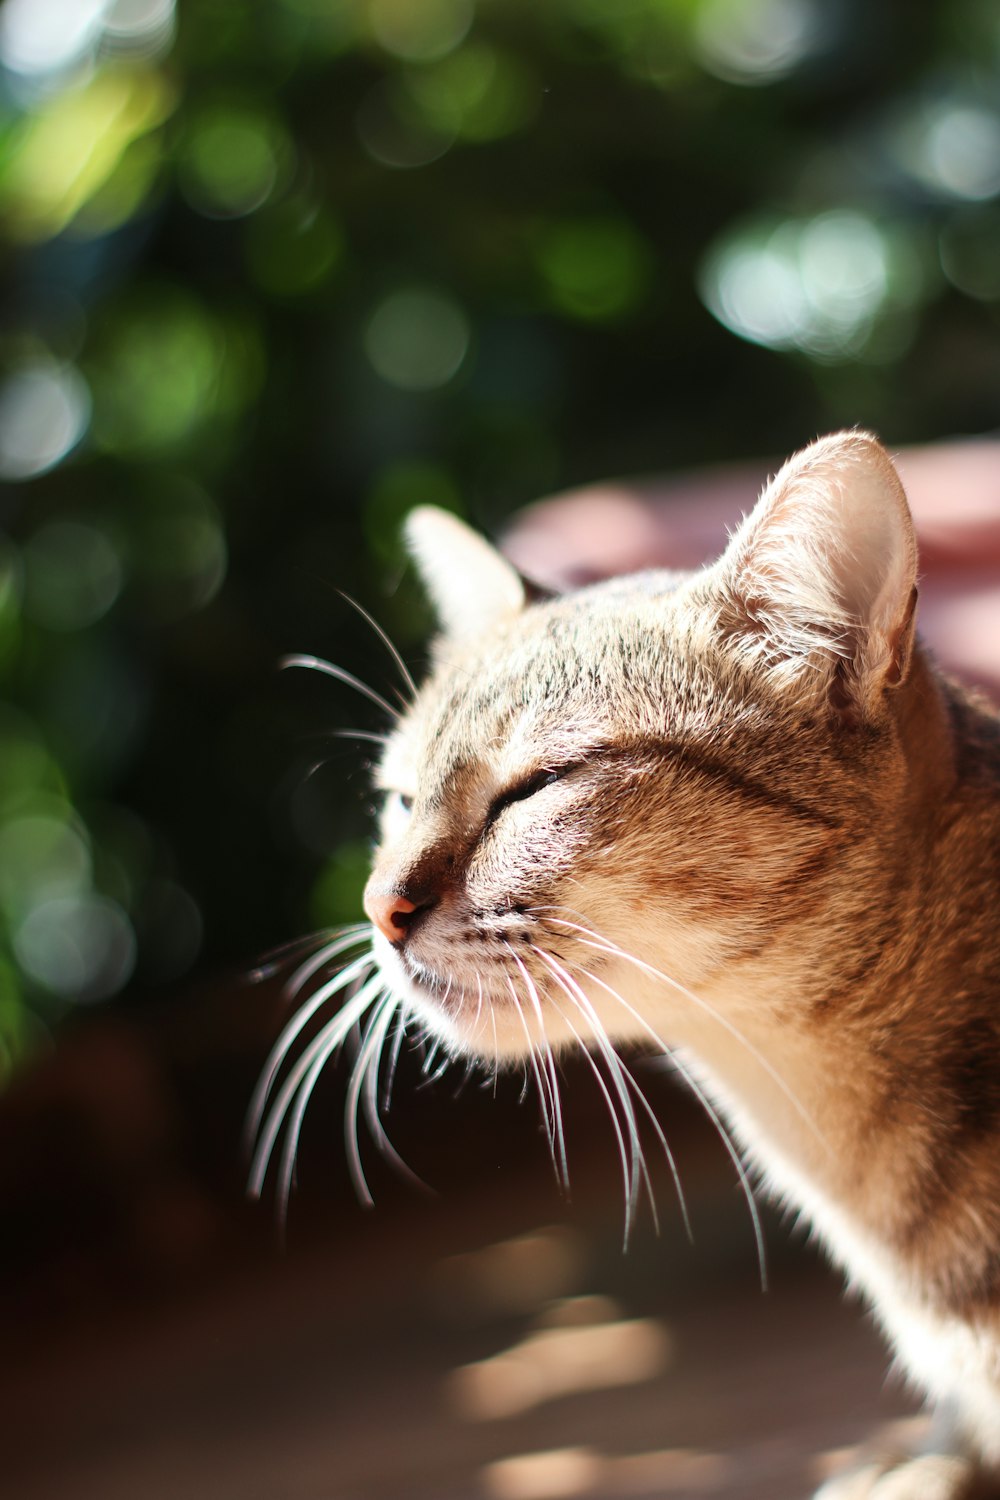 tilt shift lens photography of brown tabby cat